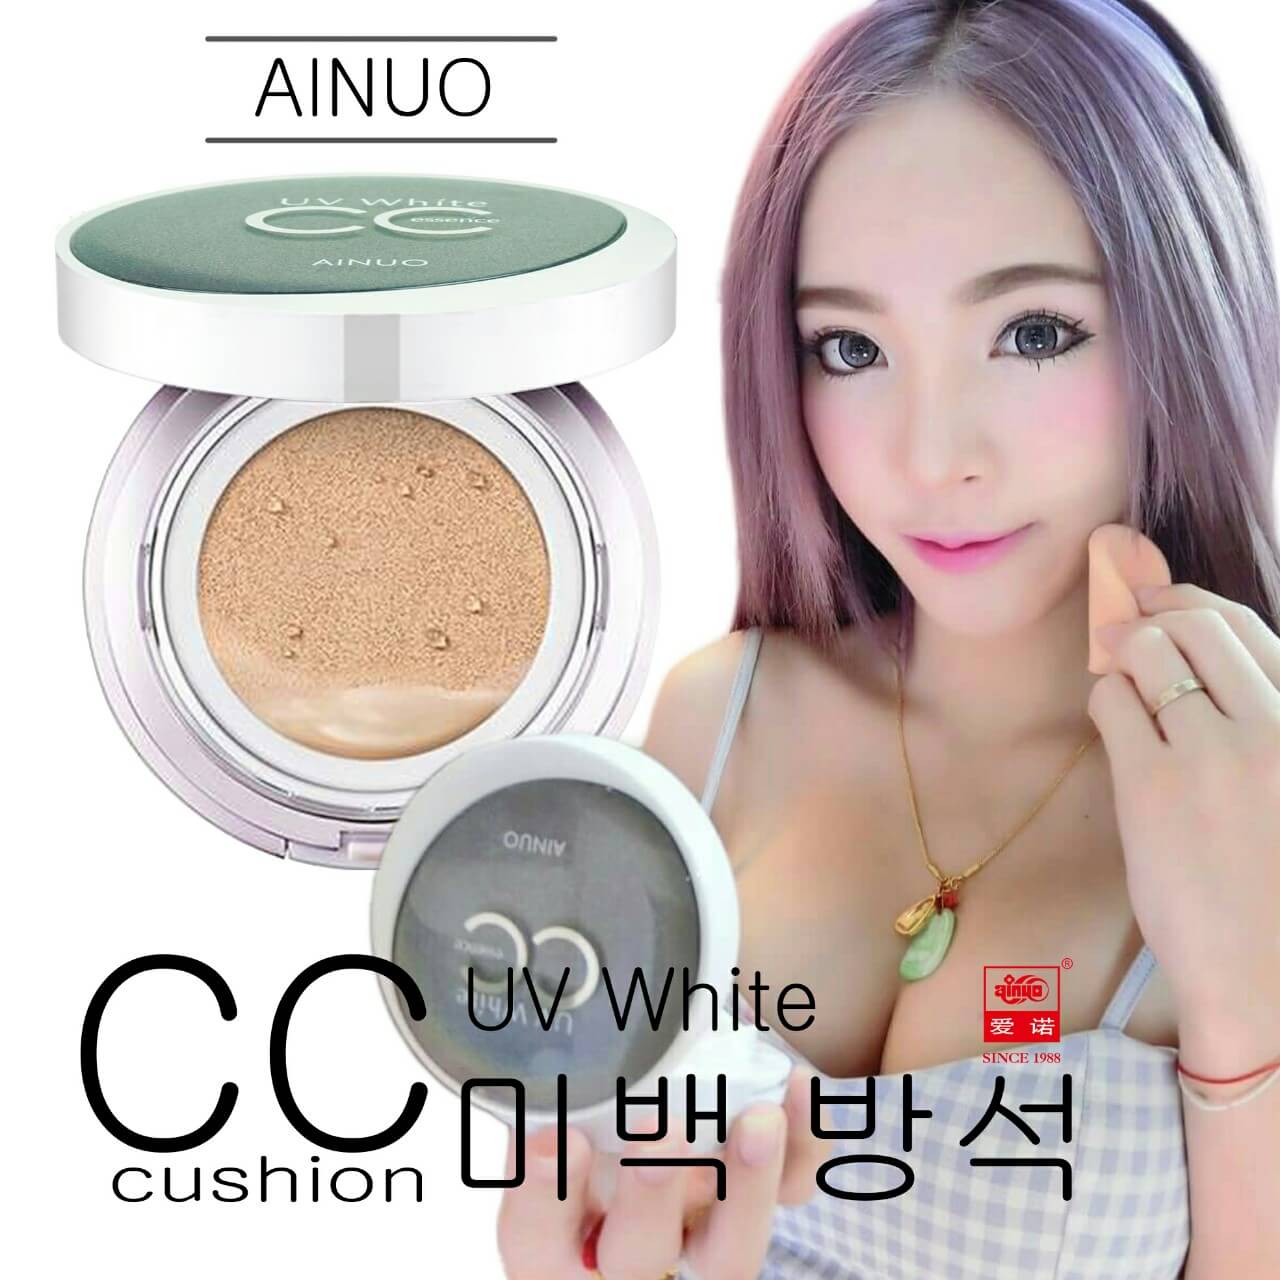 A448 Ainuo UV white CC essence Cushion #ผิวเนียน #ปกป้องแสงแดด #กันเหงื่อ #กันน้ำ #คุชชั่น